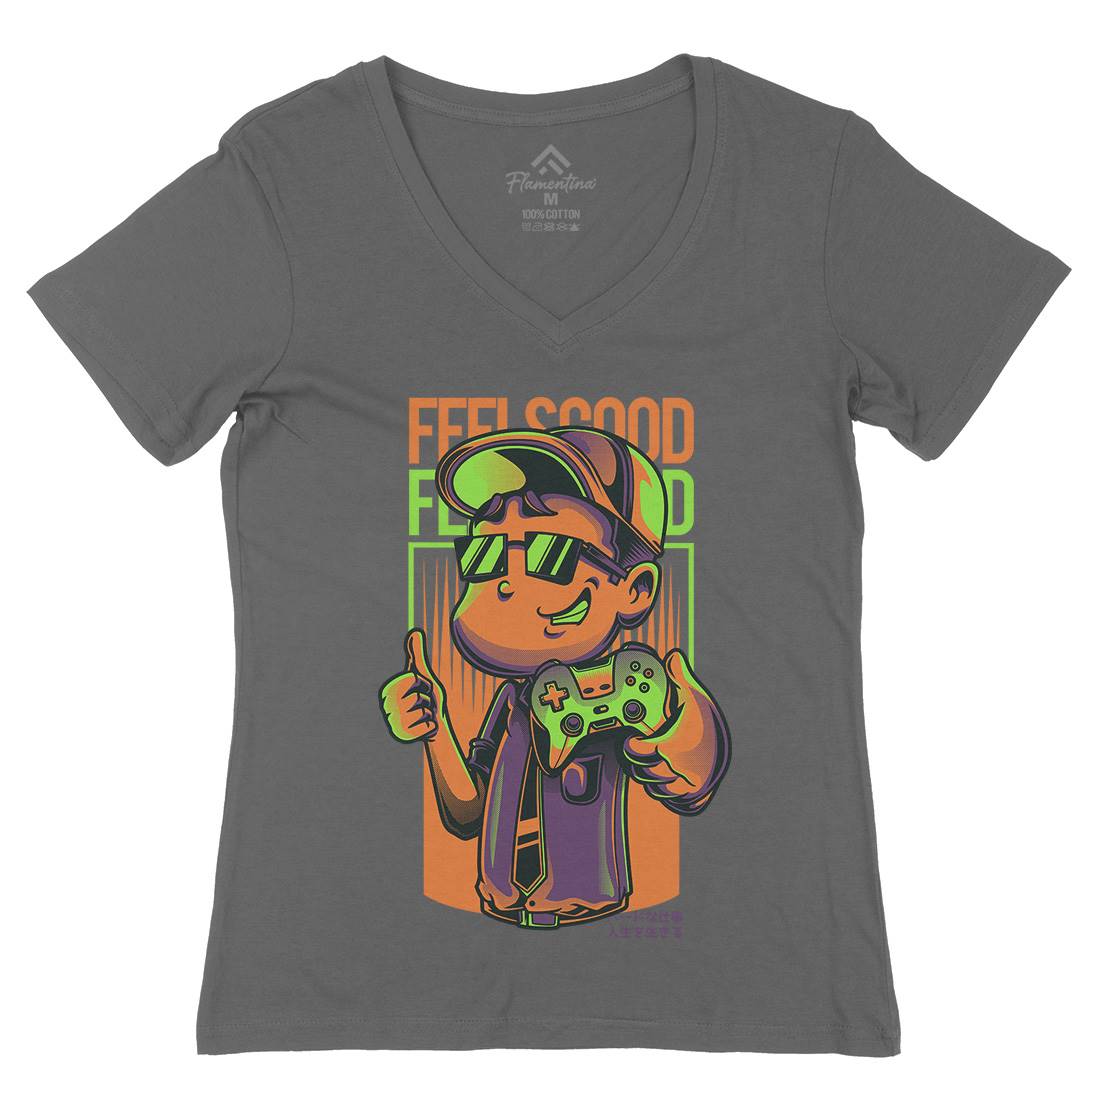 Feels Good Womens Organic V-Neck T-Shirt Geek D773